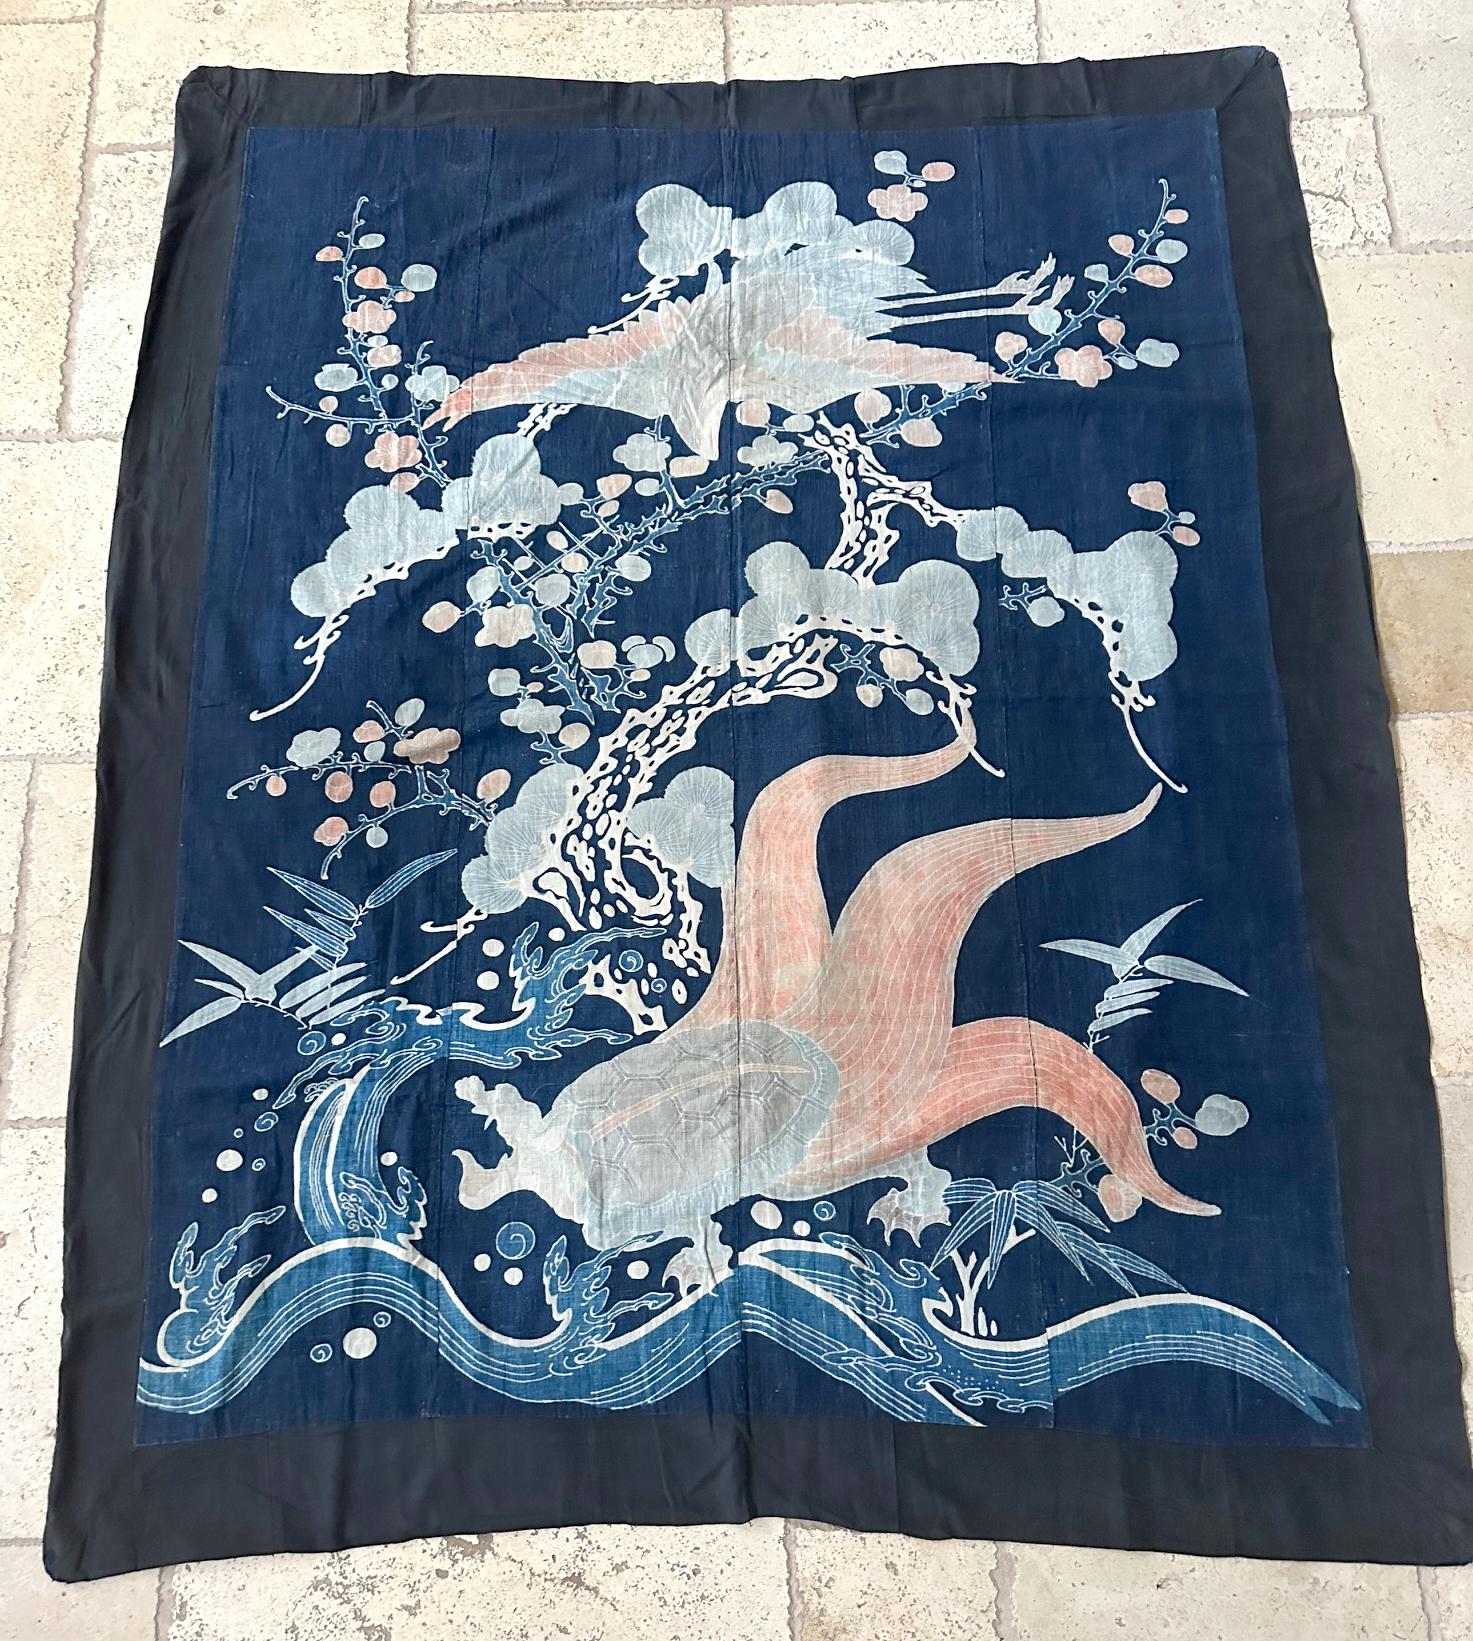 Eine große ungerahmte japanische Futonji Textilkunst circa Ende des 19. Jahrhunderts gegen Ende der Meiji-Periode. Dieses große Stück, das aus vier vertikalen Baumwollbahnen in tiefem Indigo zusammengenäht ist, wurde als Futonji (Futonbezug) oder